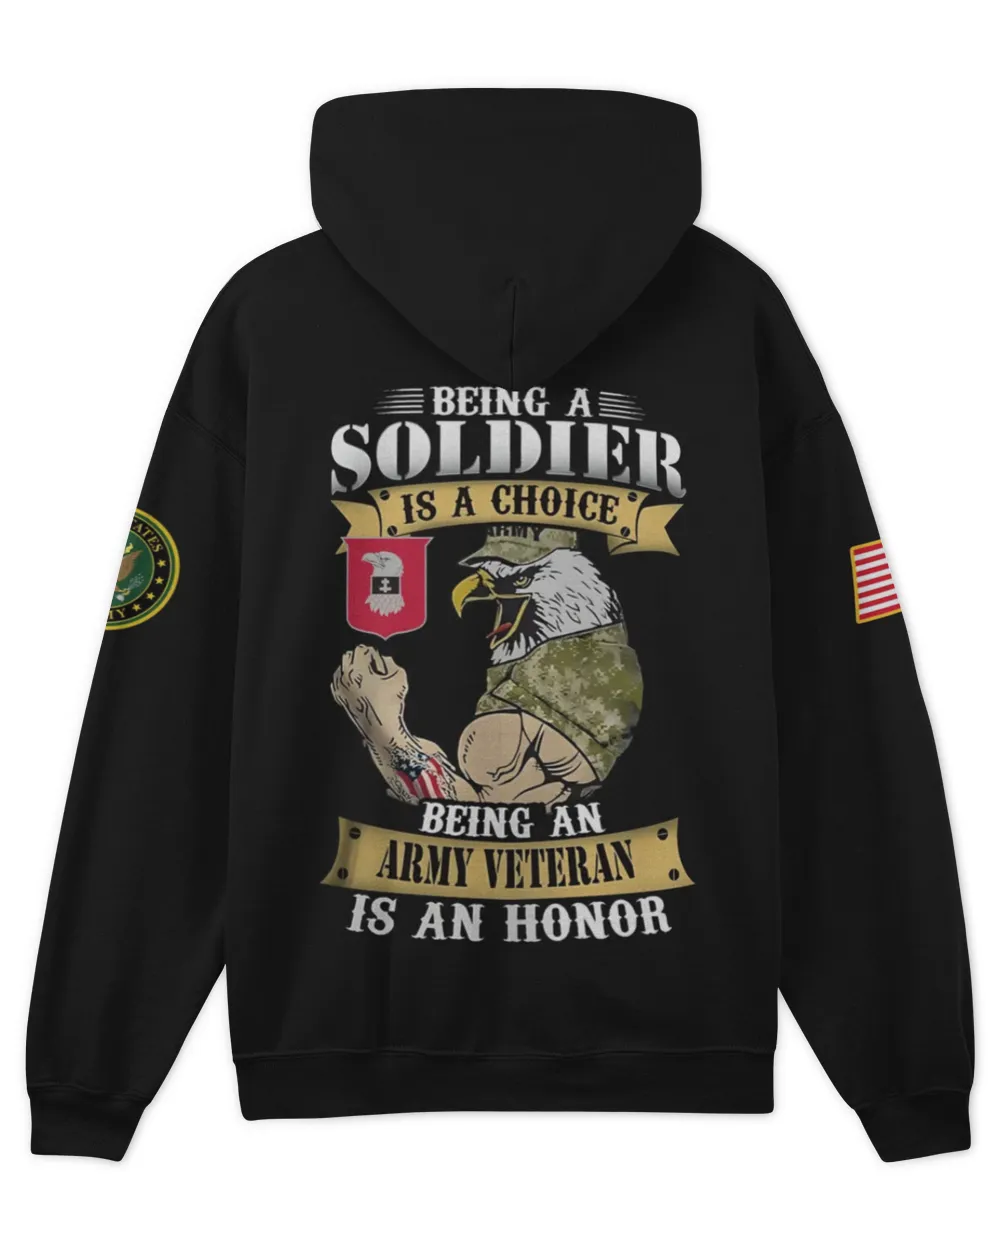 24th Engineer Battalion Germany  Tshirt